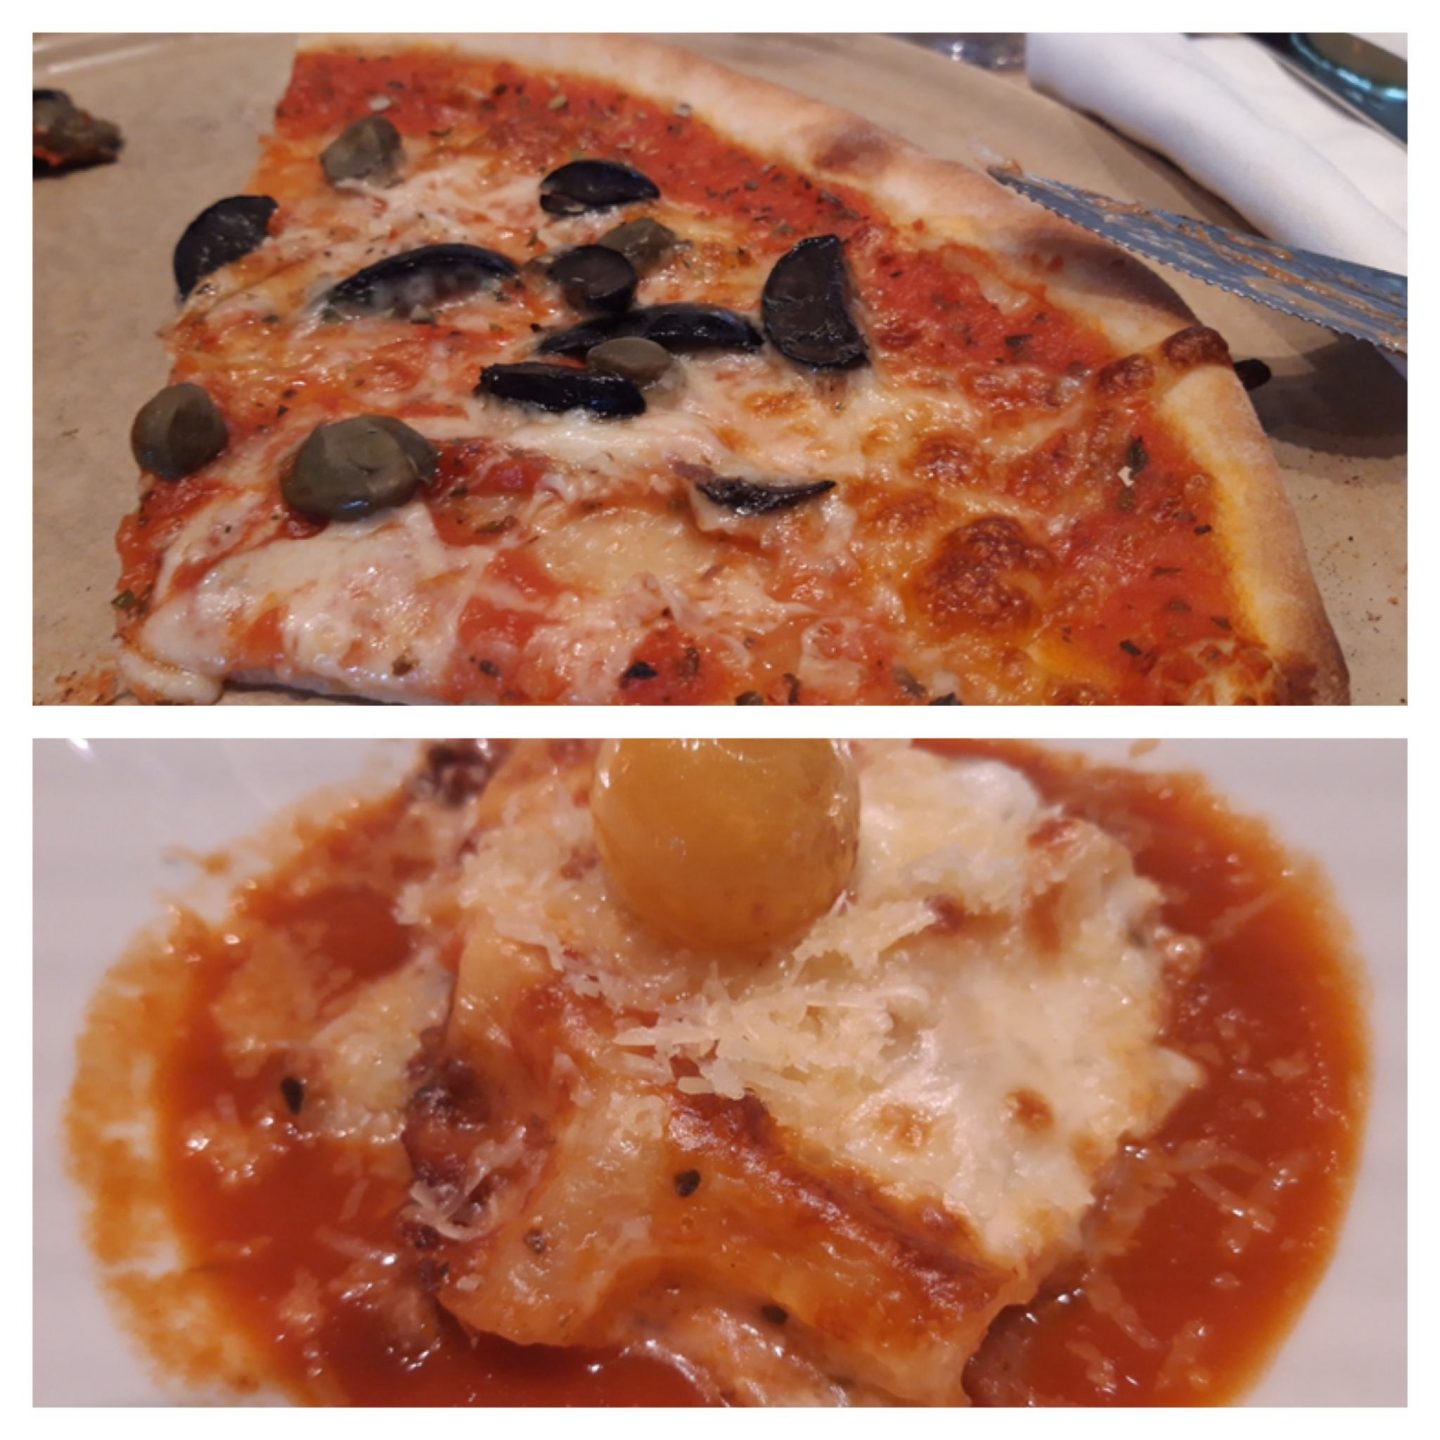 Erfahrung Bewertung Kritik Osteria Pizza Pasta Mein Schiff 6 Foodblog Sternestulle